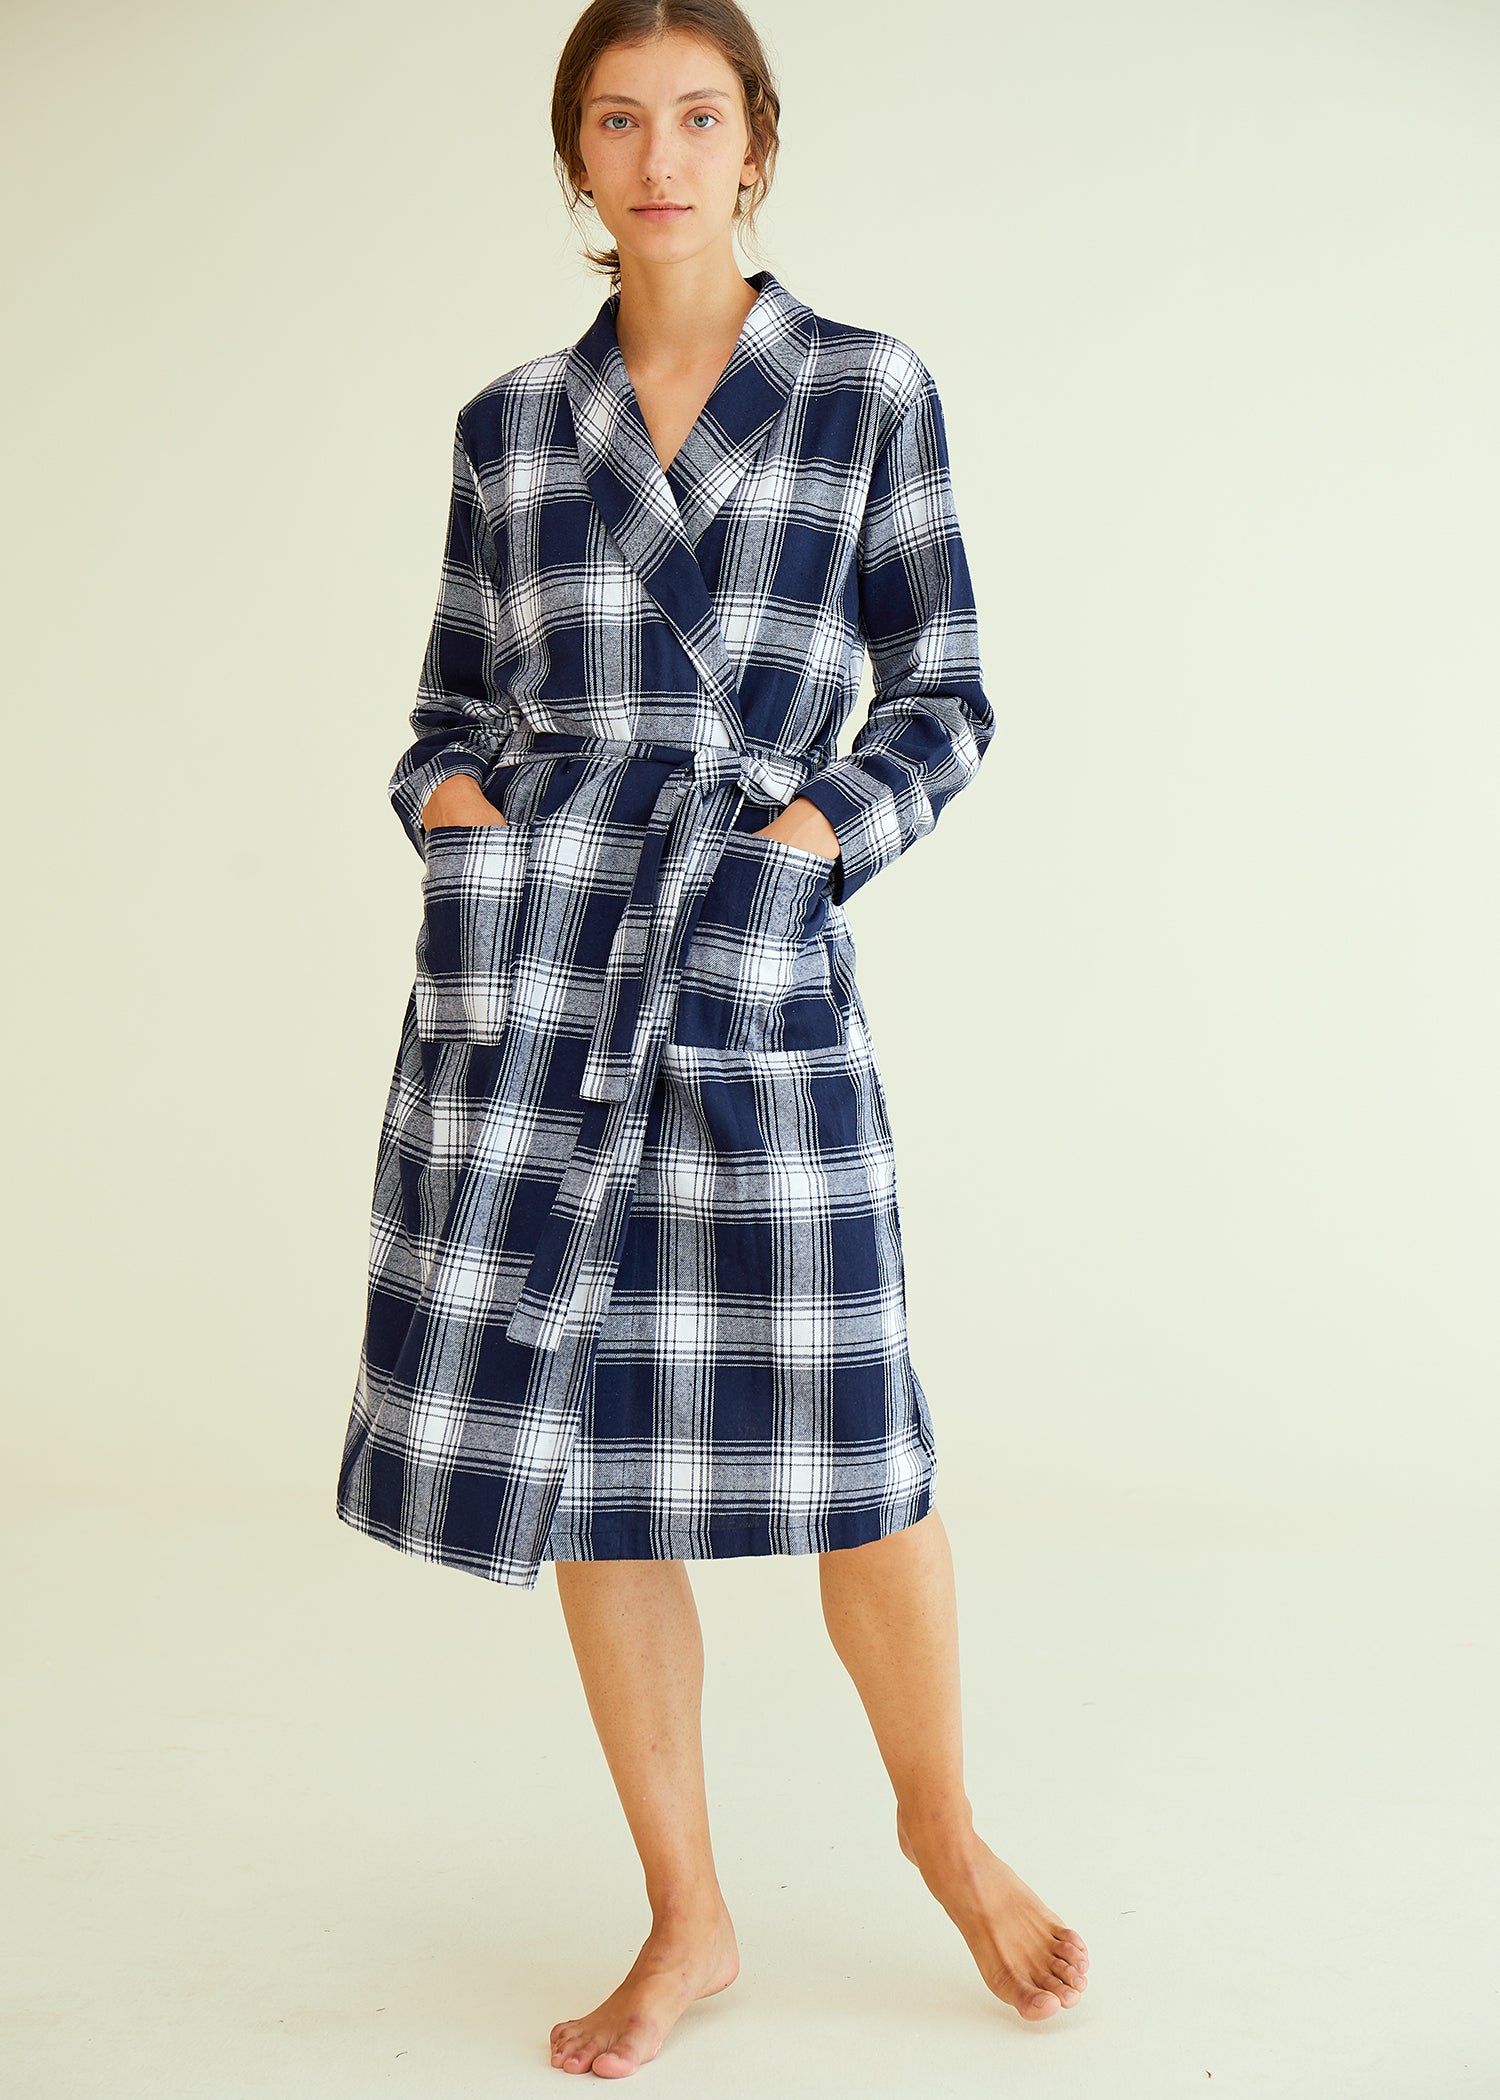 Women's Sleeveless Cotton Nightgown with Matching Long Robe Set – Latuza